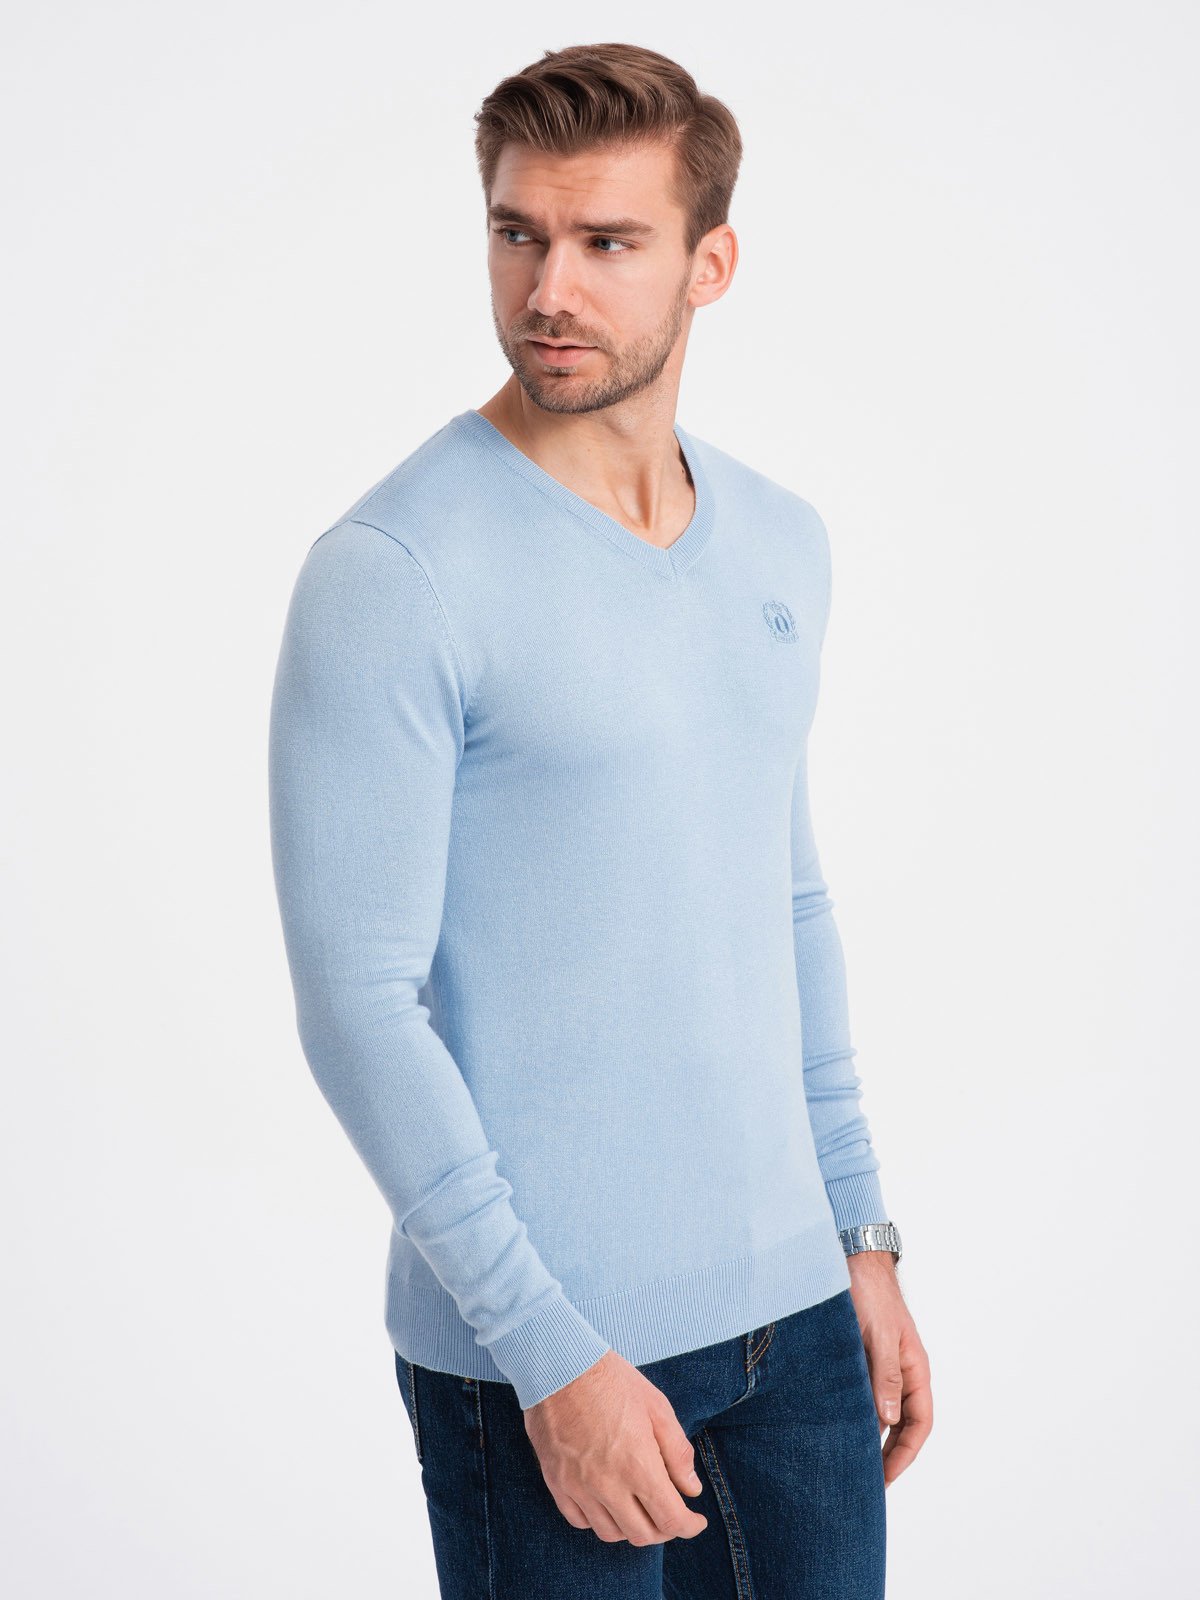 Elegant men's sweater with a v-neck - light blue V10 OM-SWBS V10 OM-SWBS - 0107